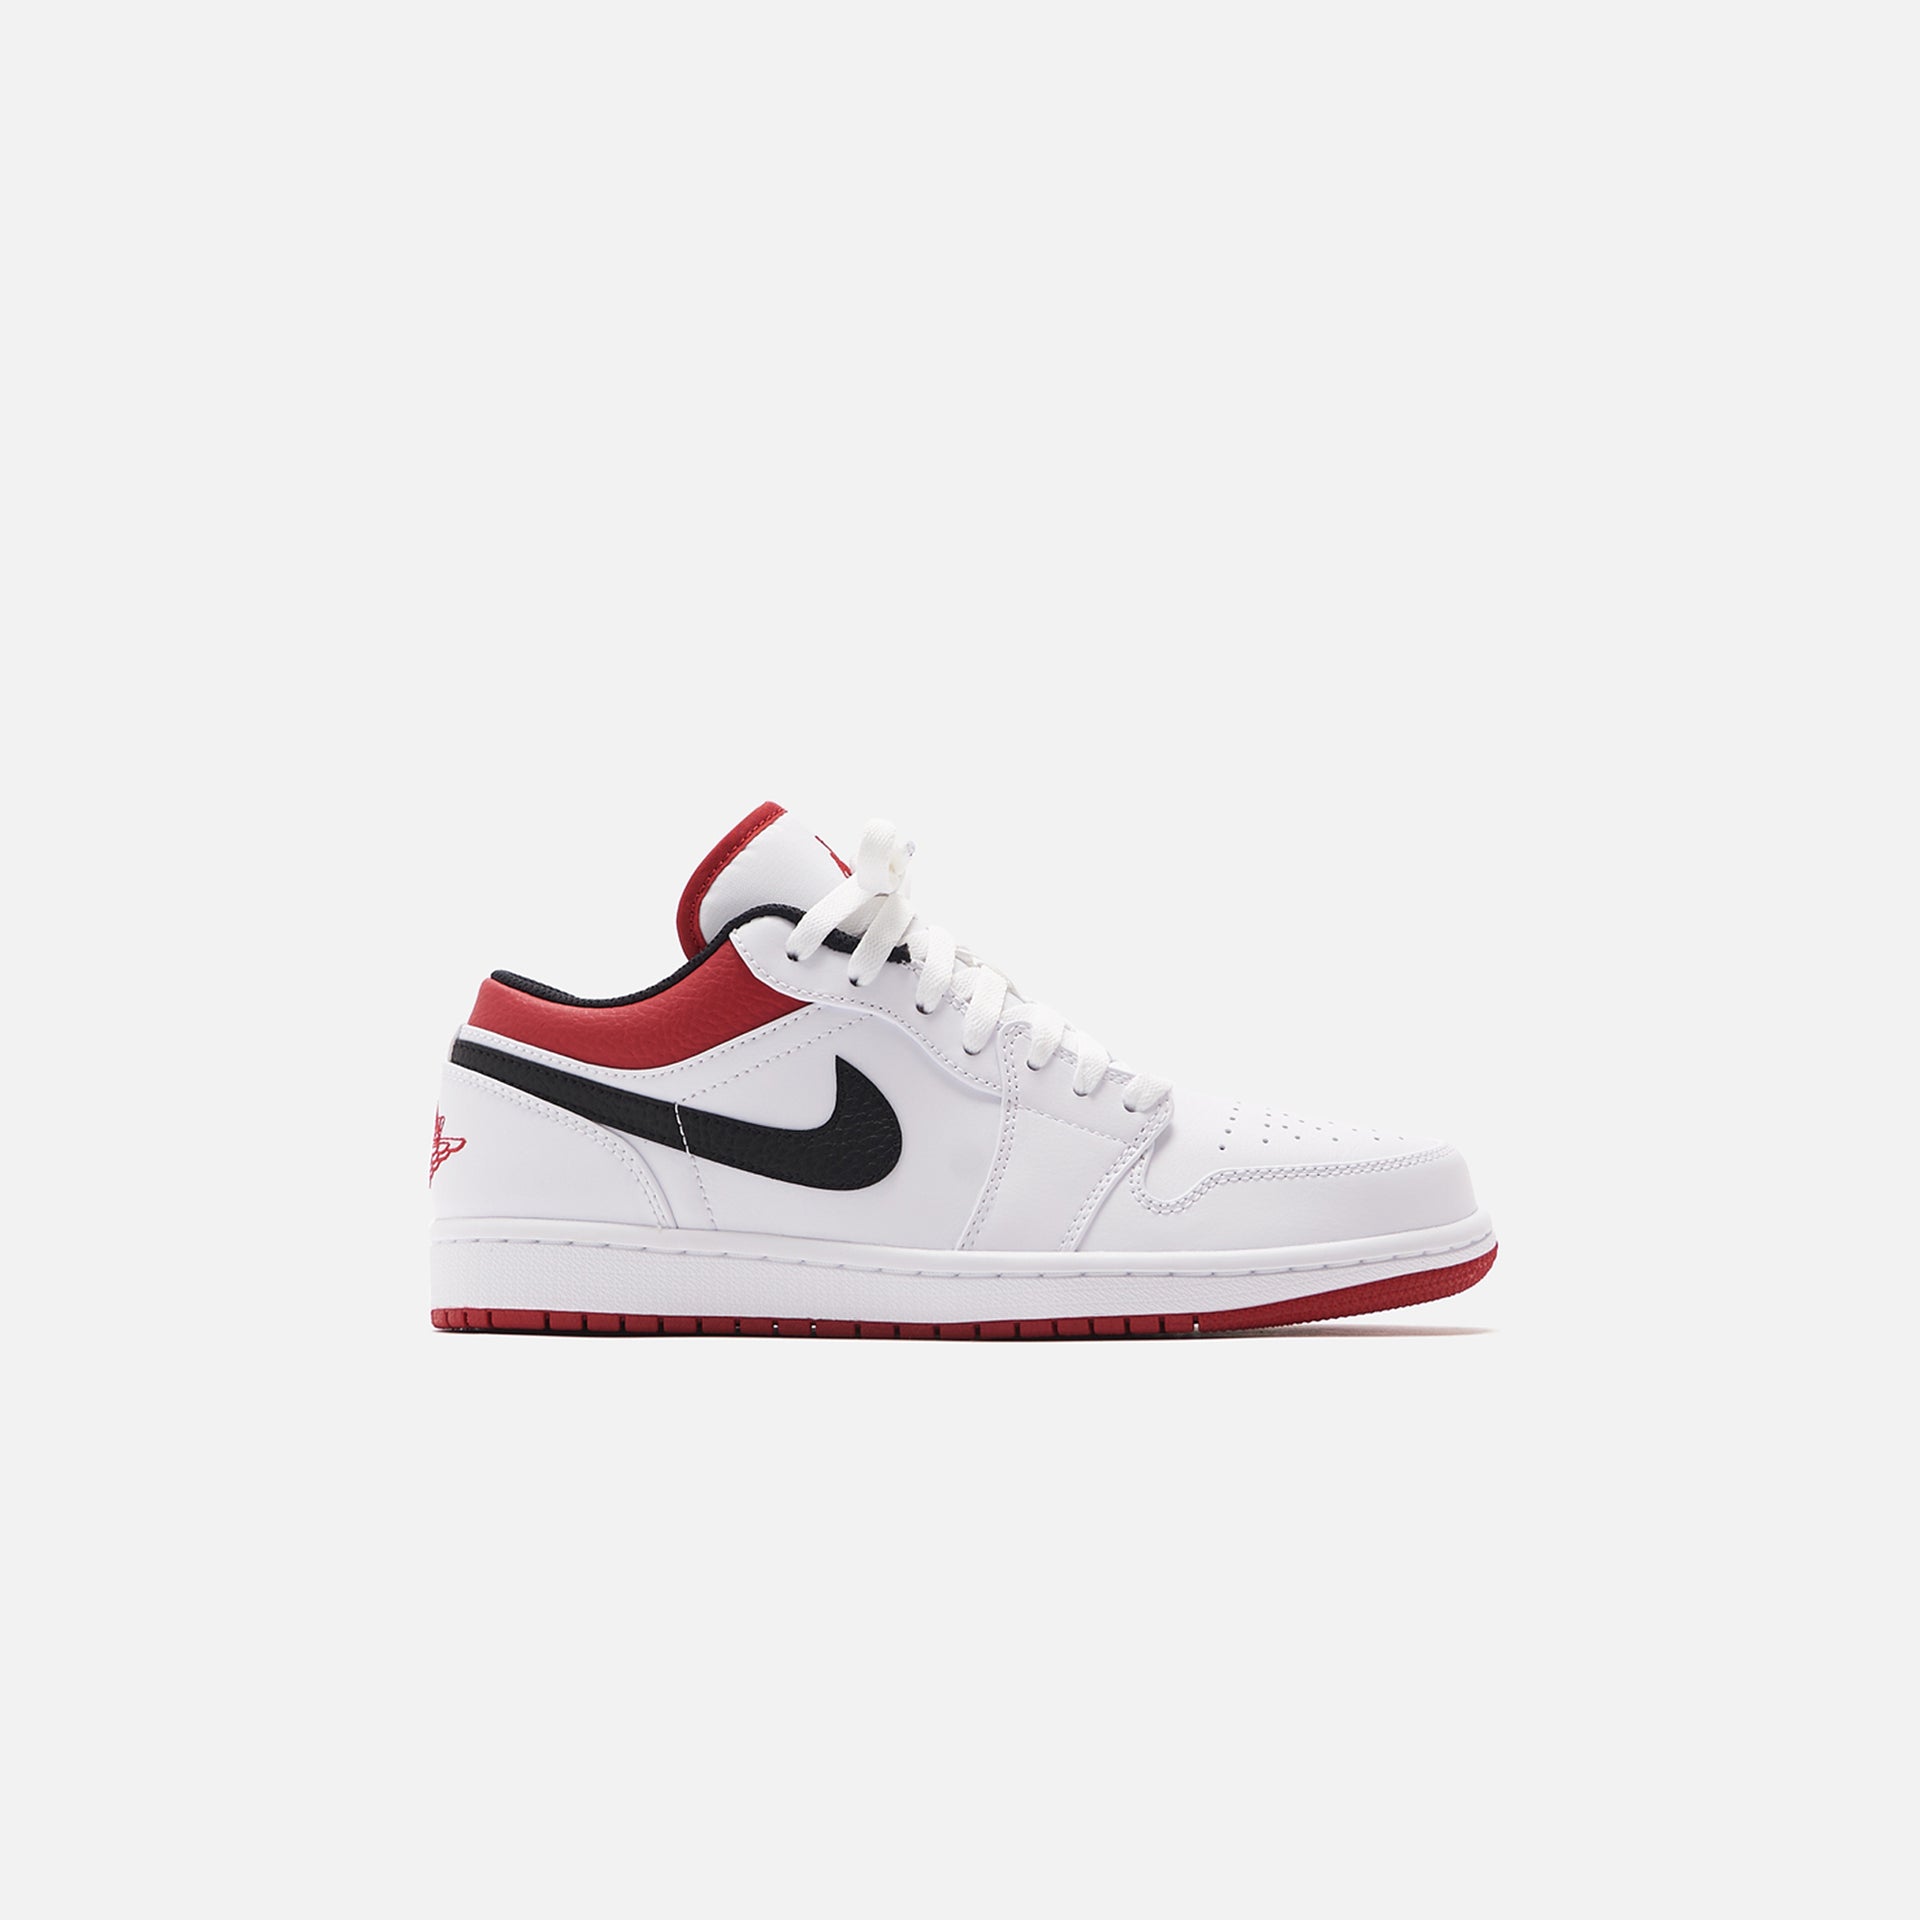 Nike Air Jordan 1 Low - White / Gym Red / Black